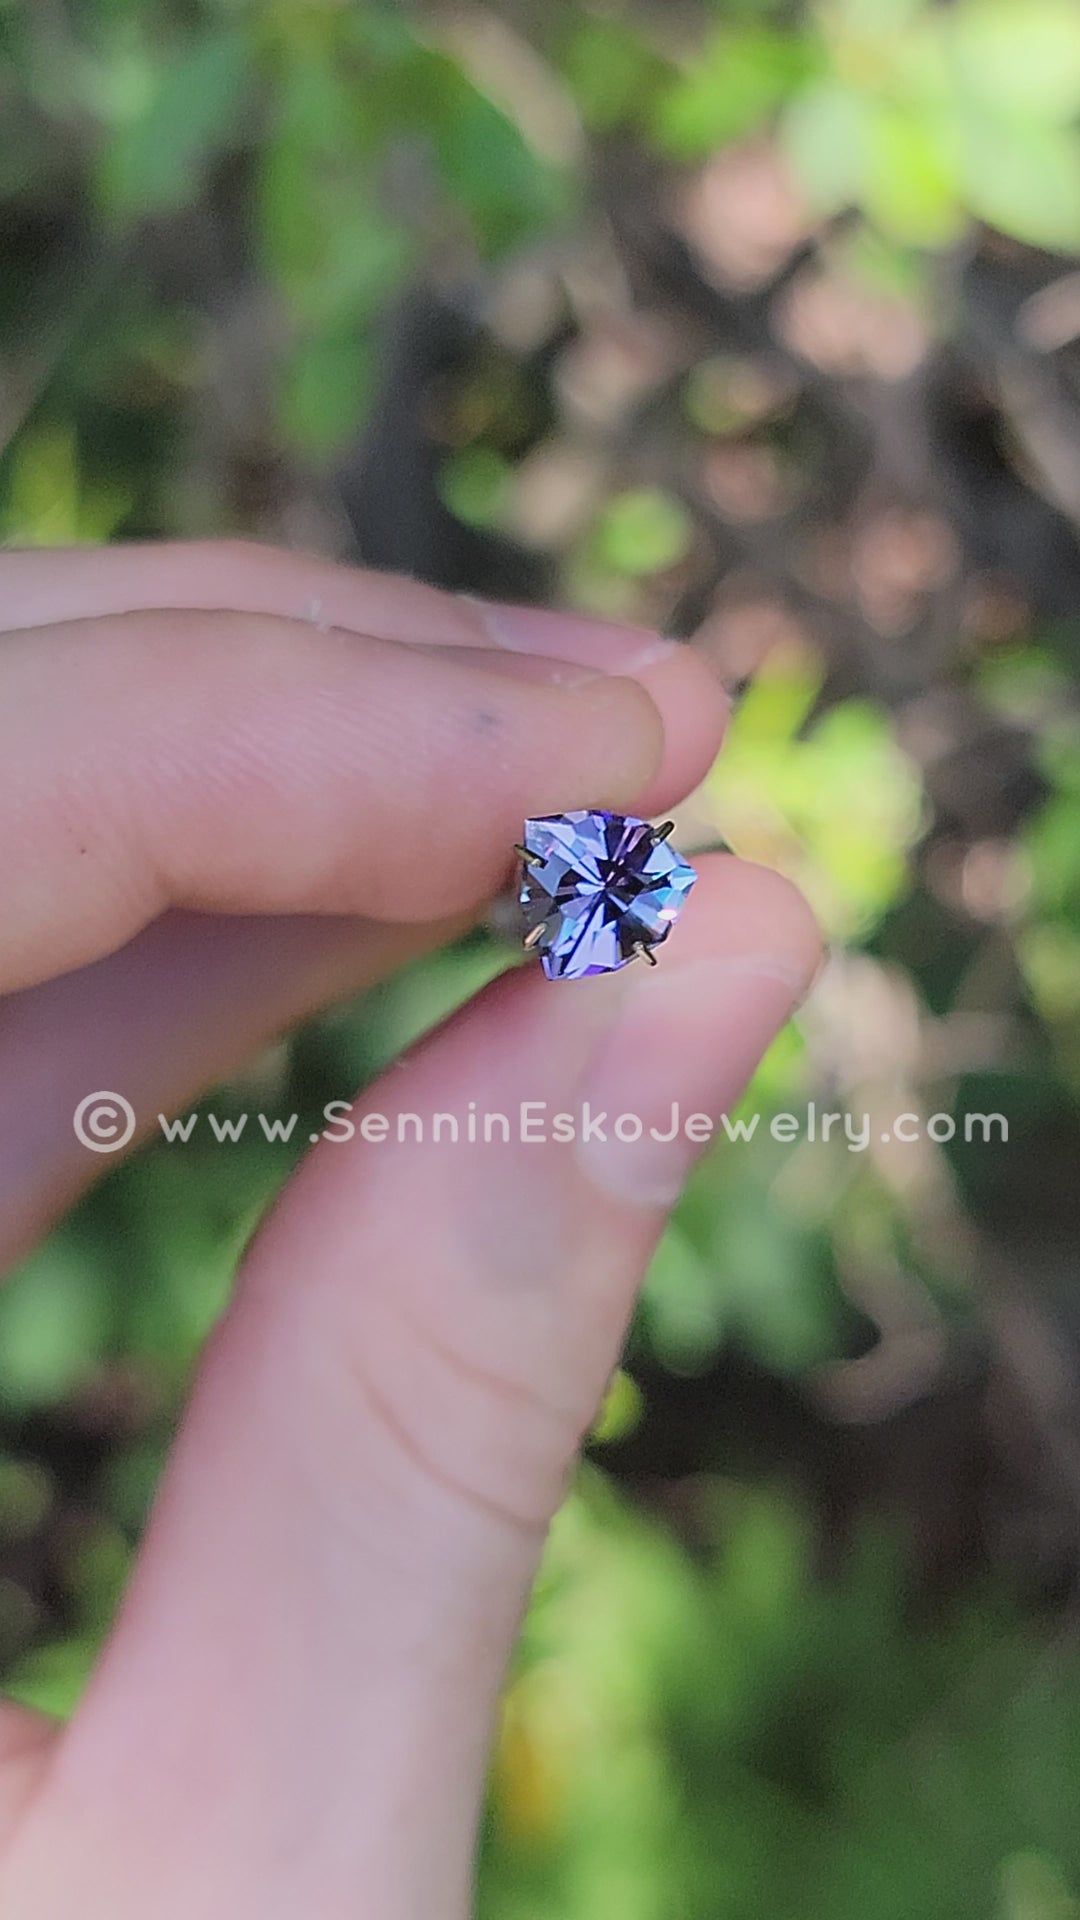 2,3 Karat blauer und violetter Tansanitschild – 8,1 x 7,5 mm – ungewärmt – Spezialschliff